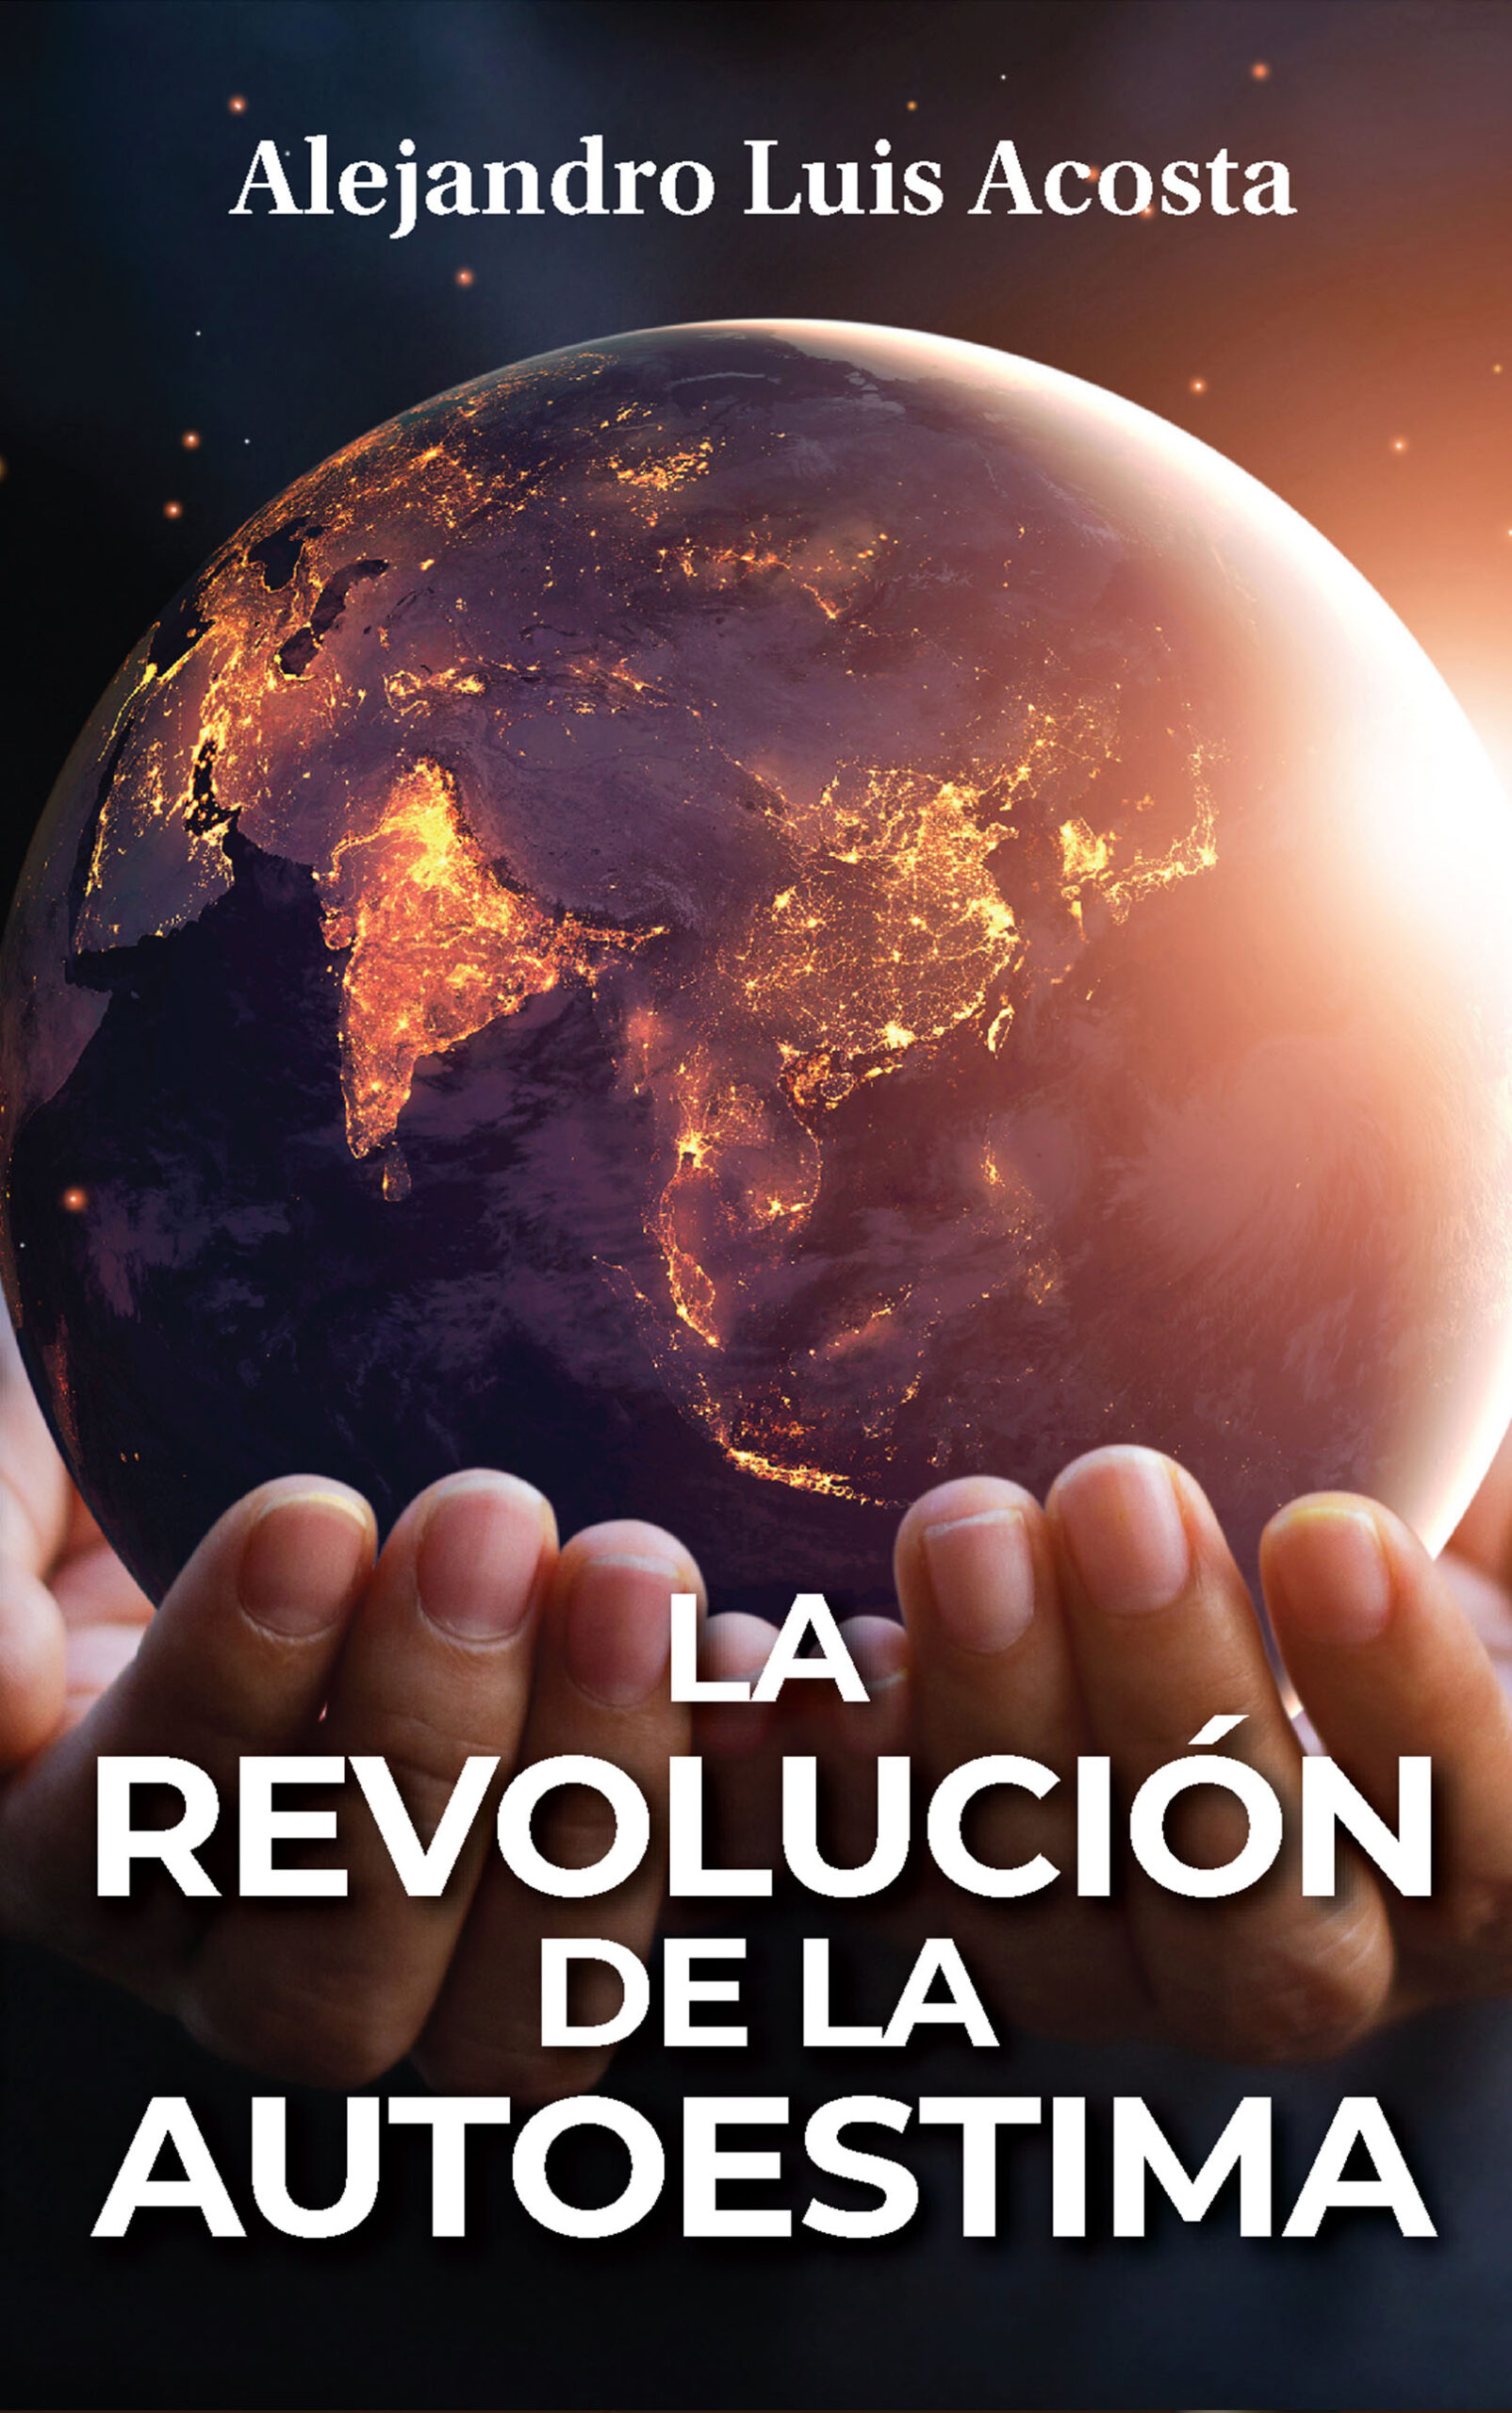 La revolución de la autoestima, de Alejandro Luis Acosta